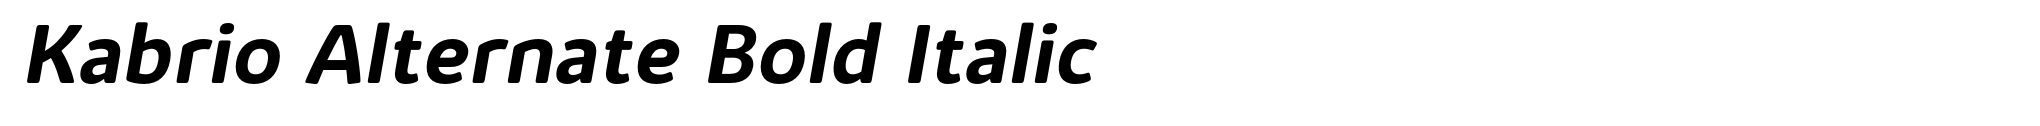 Kabrio Alternate Bold Italic image